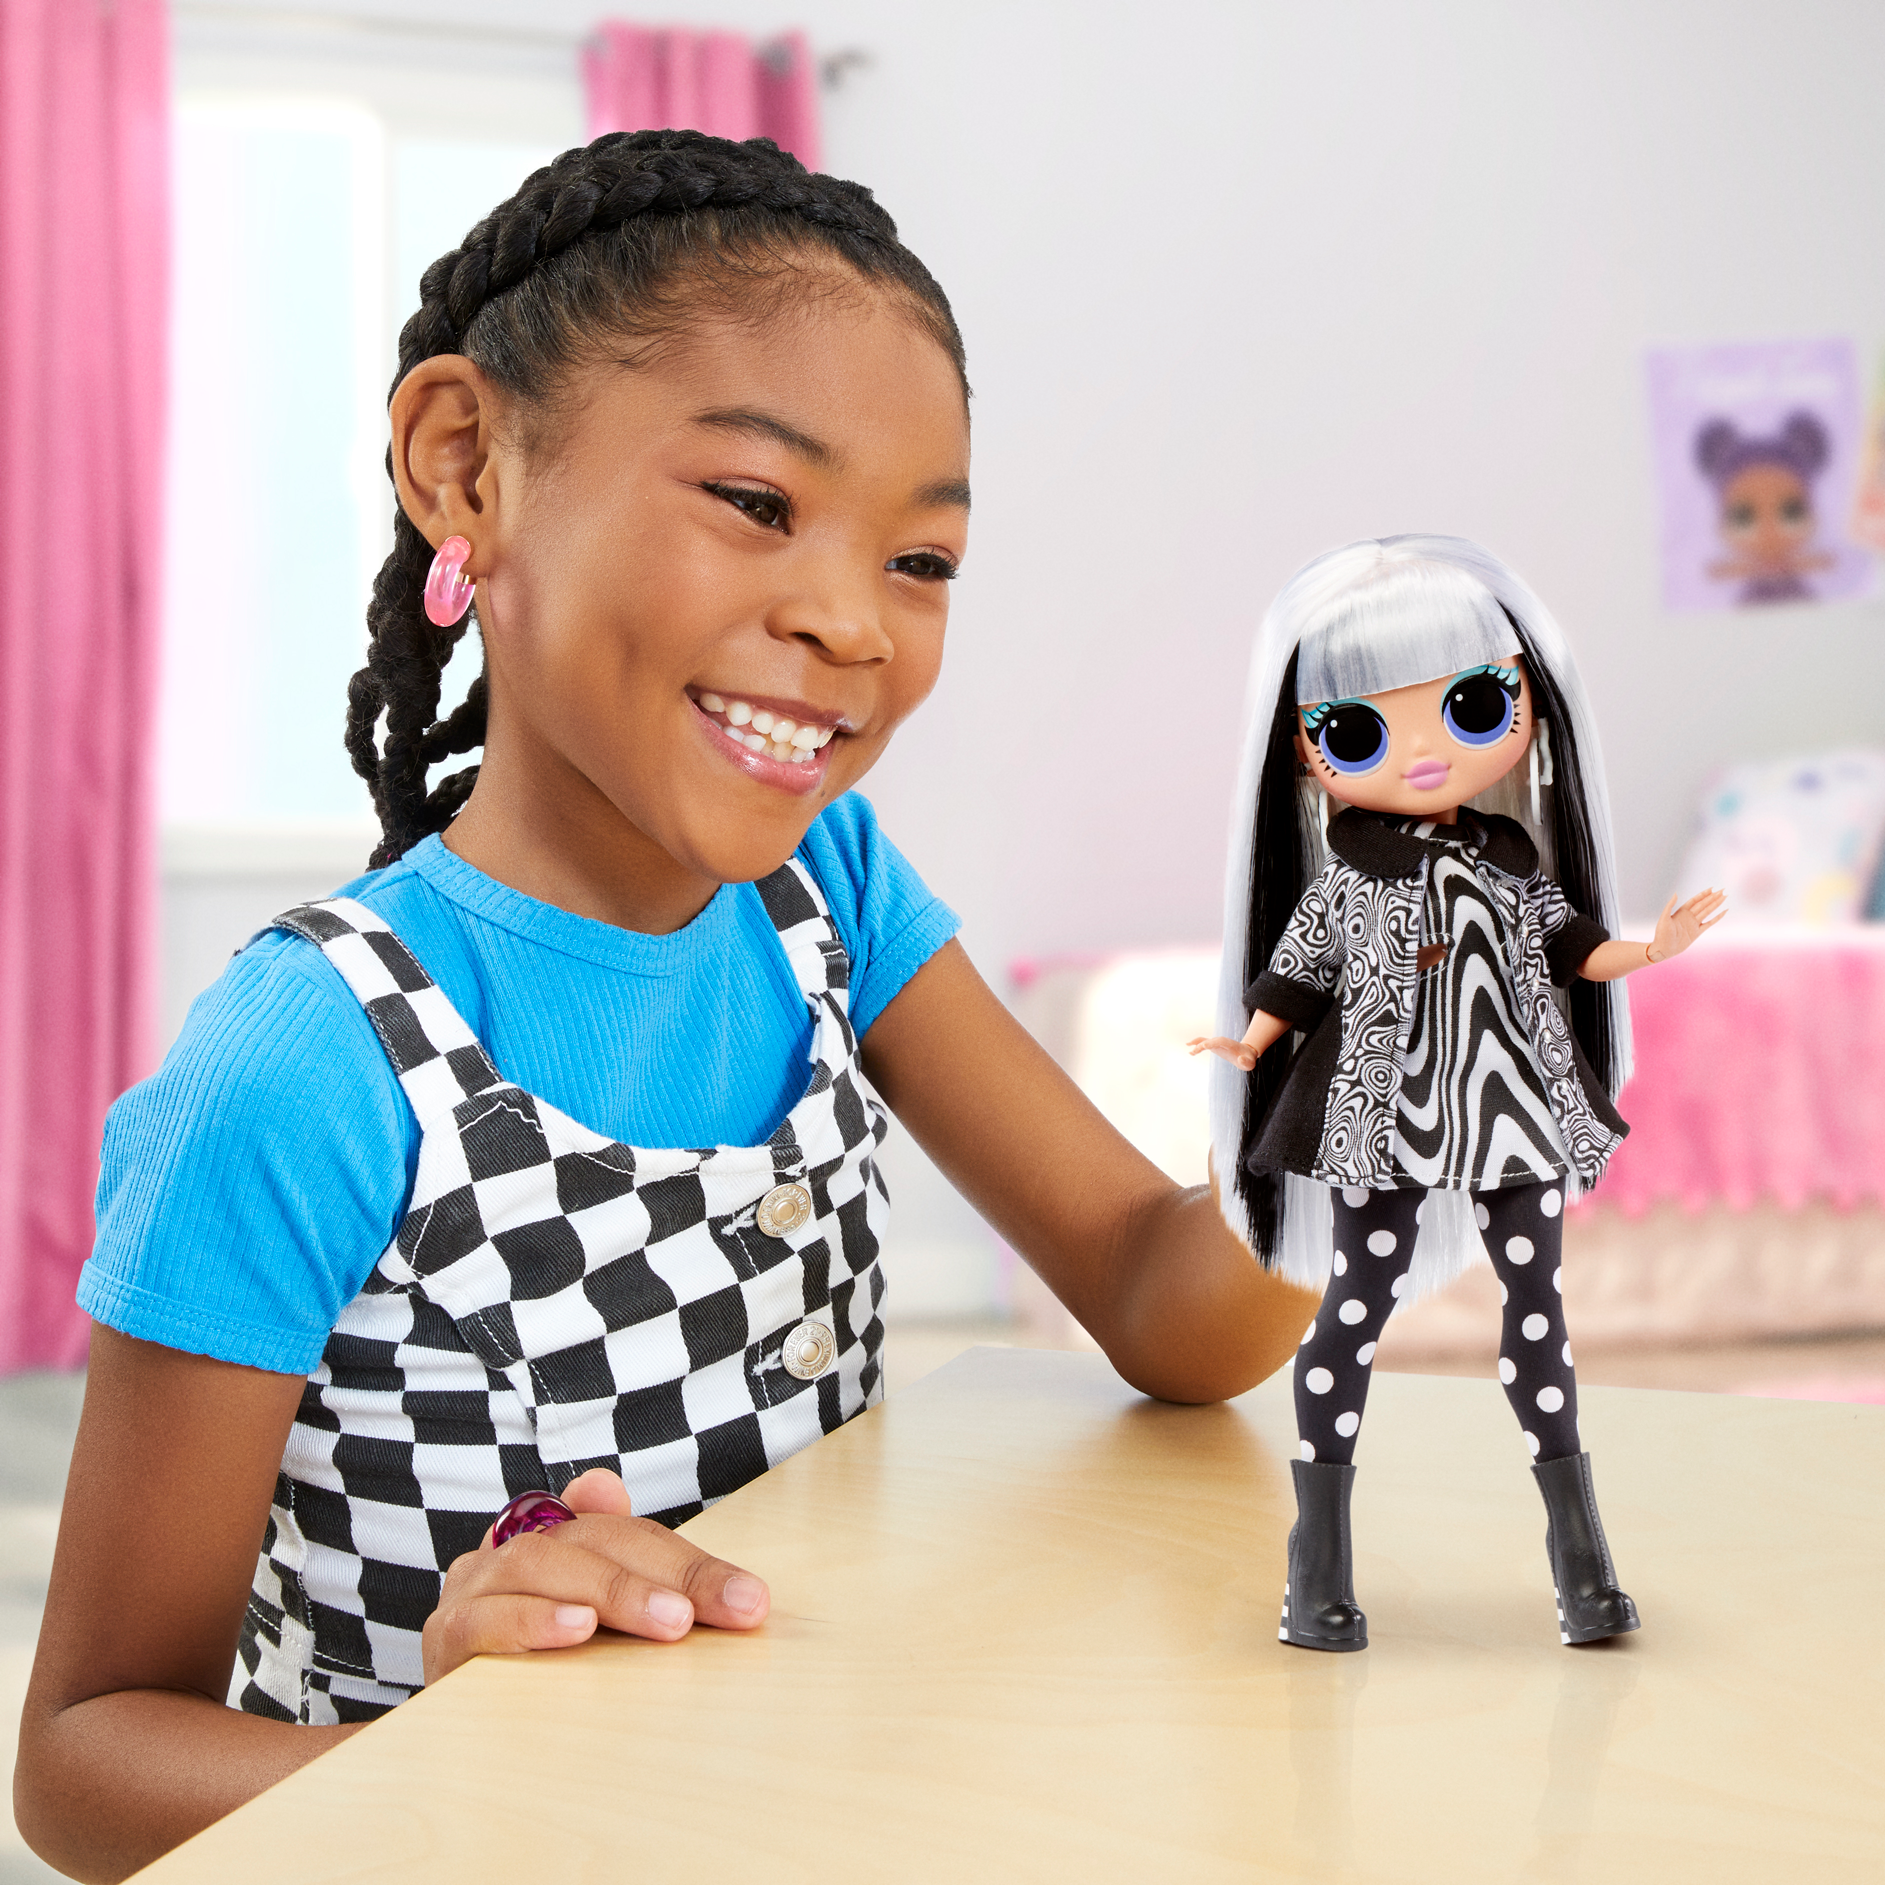 Lol surprise omg fashion doll serie 3: groovy babe. una fashion doll, tantissime sorprese e favolosi accessori - LOL